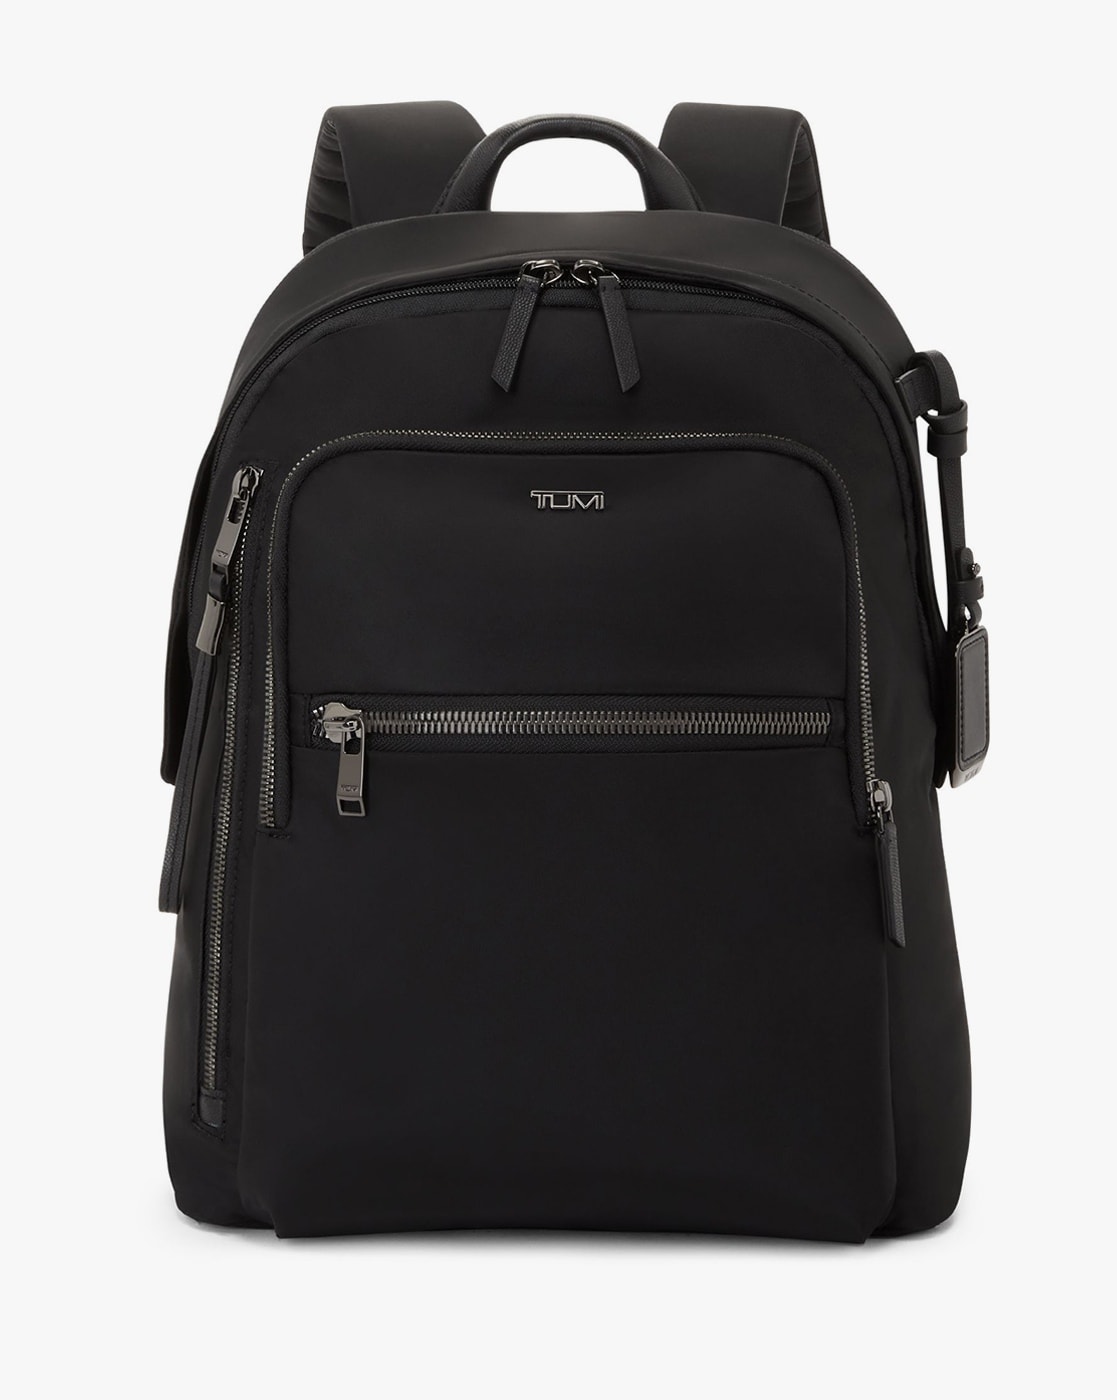 TUMI Voyageur Atlanta Backpack Black/Gunmetal 146574-T522 - Best Buy